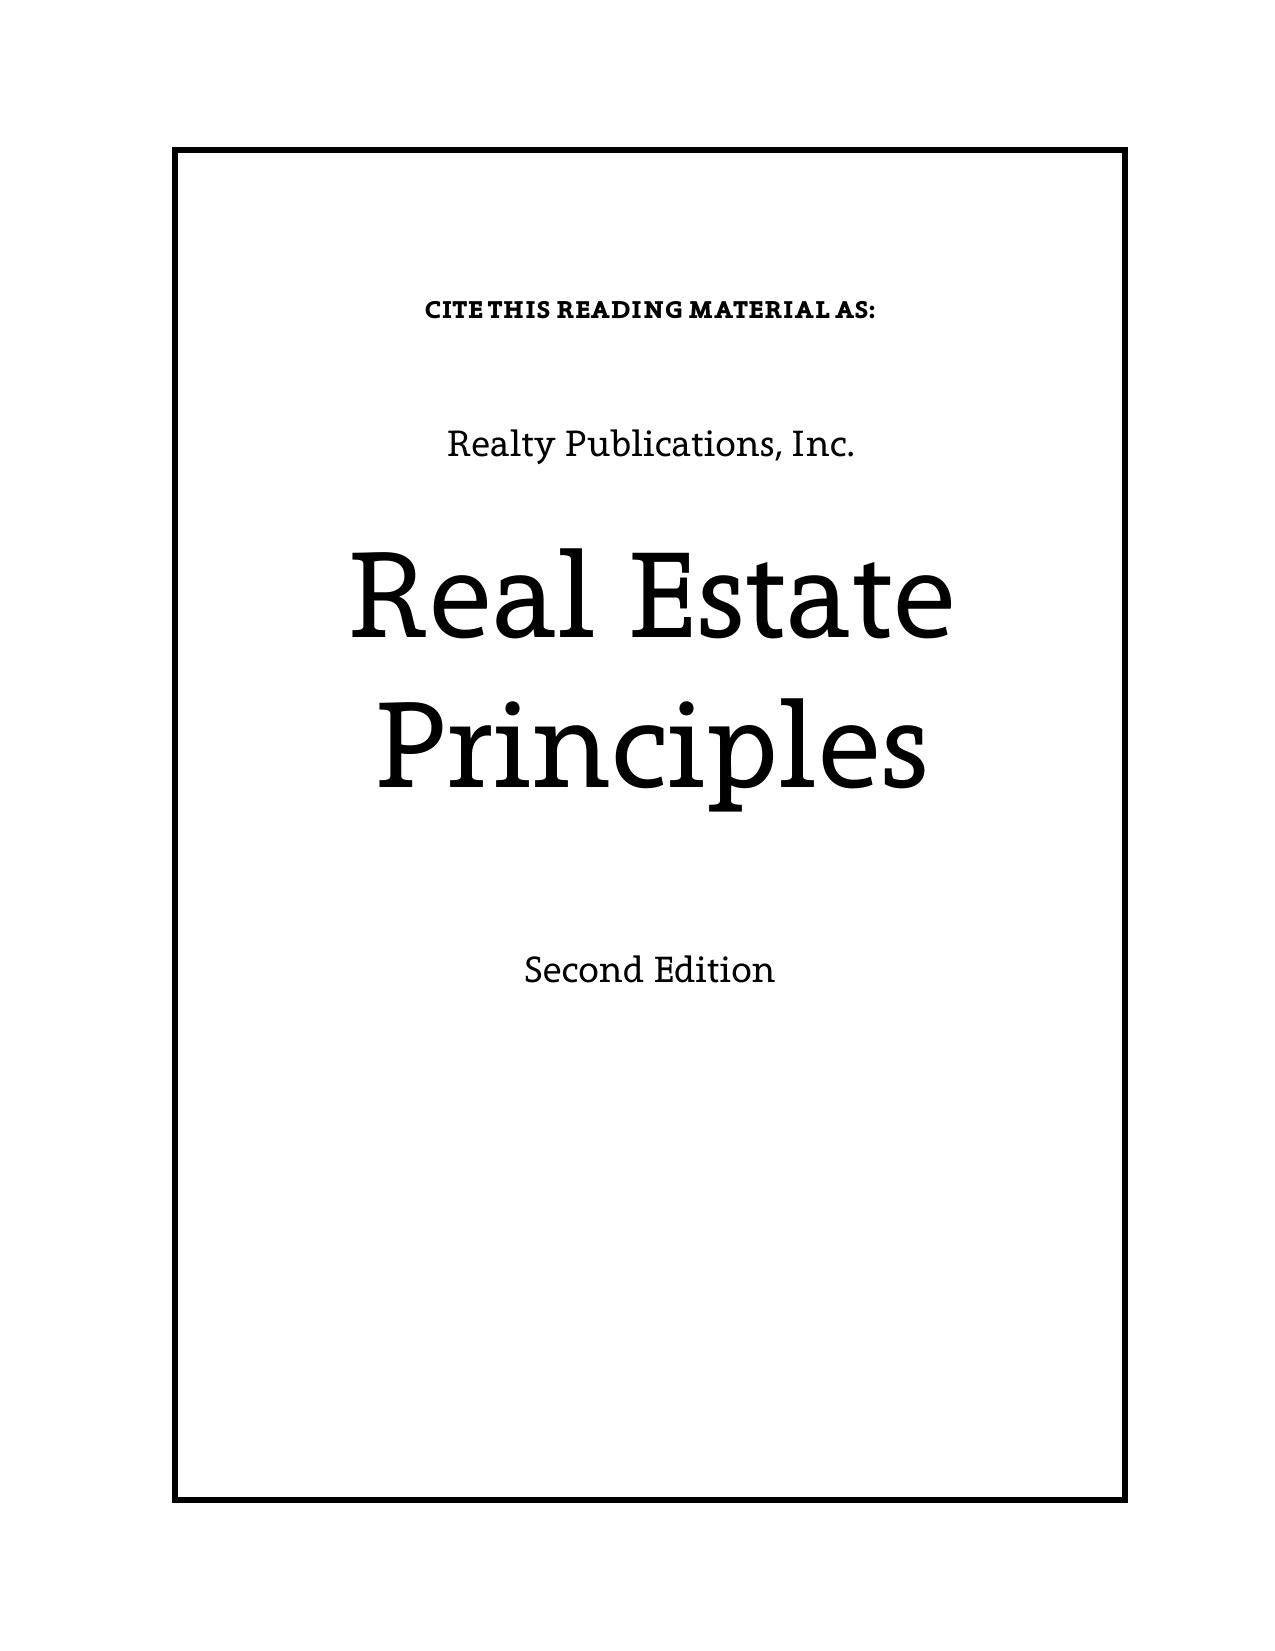 Real Estate Principles 2016